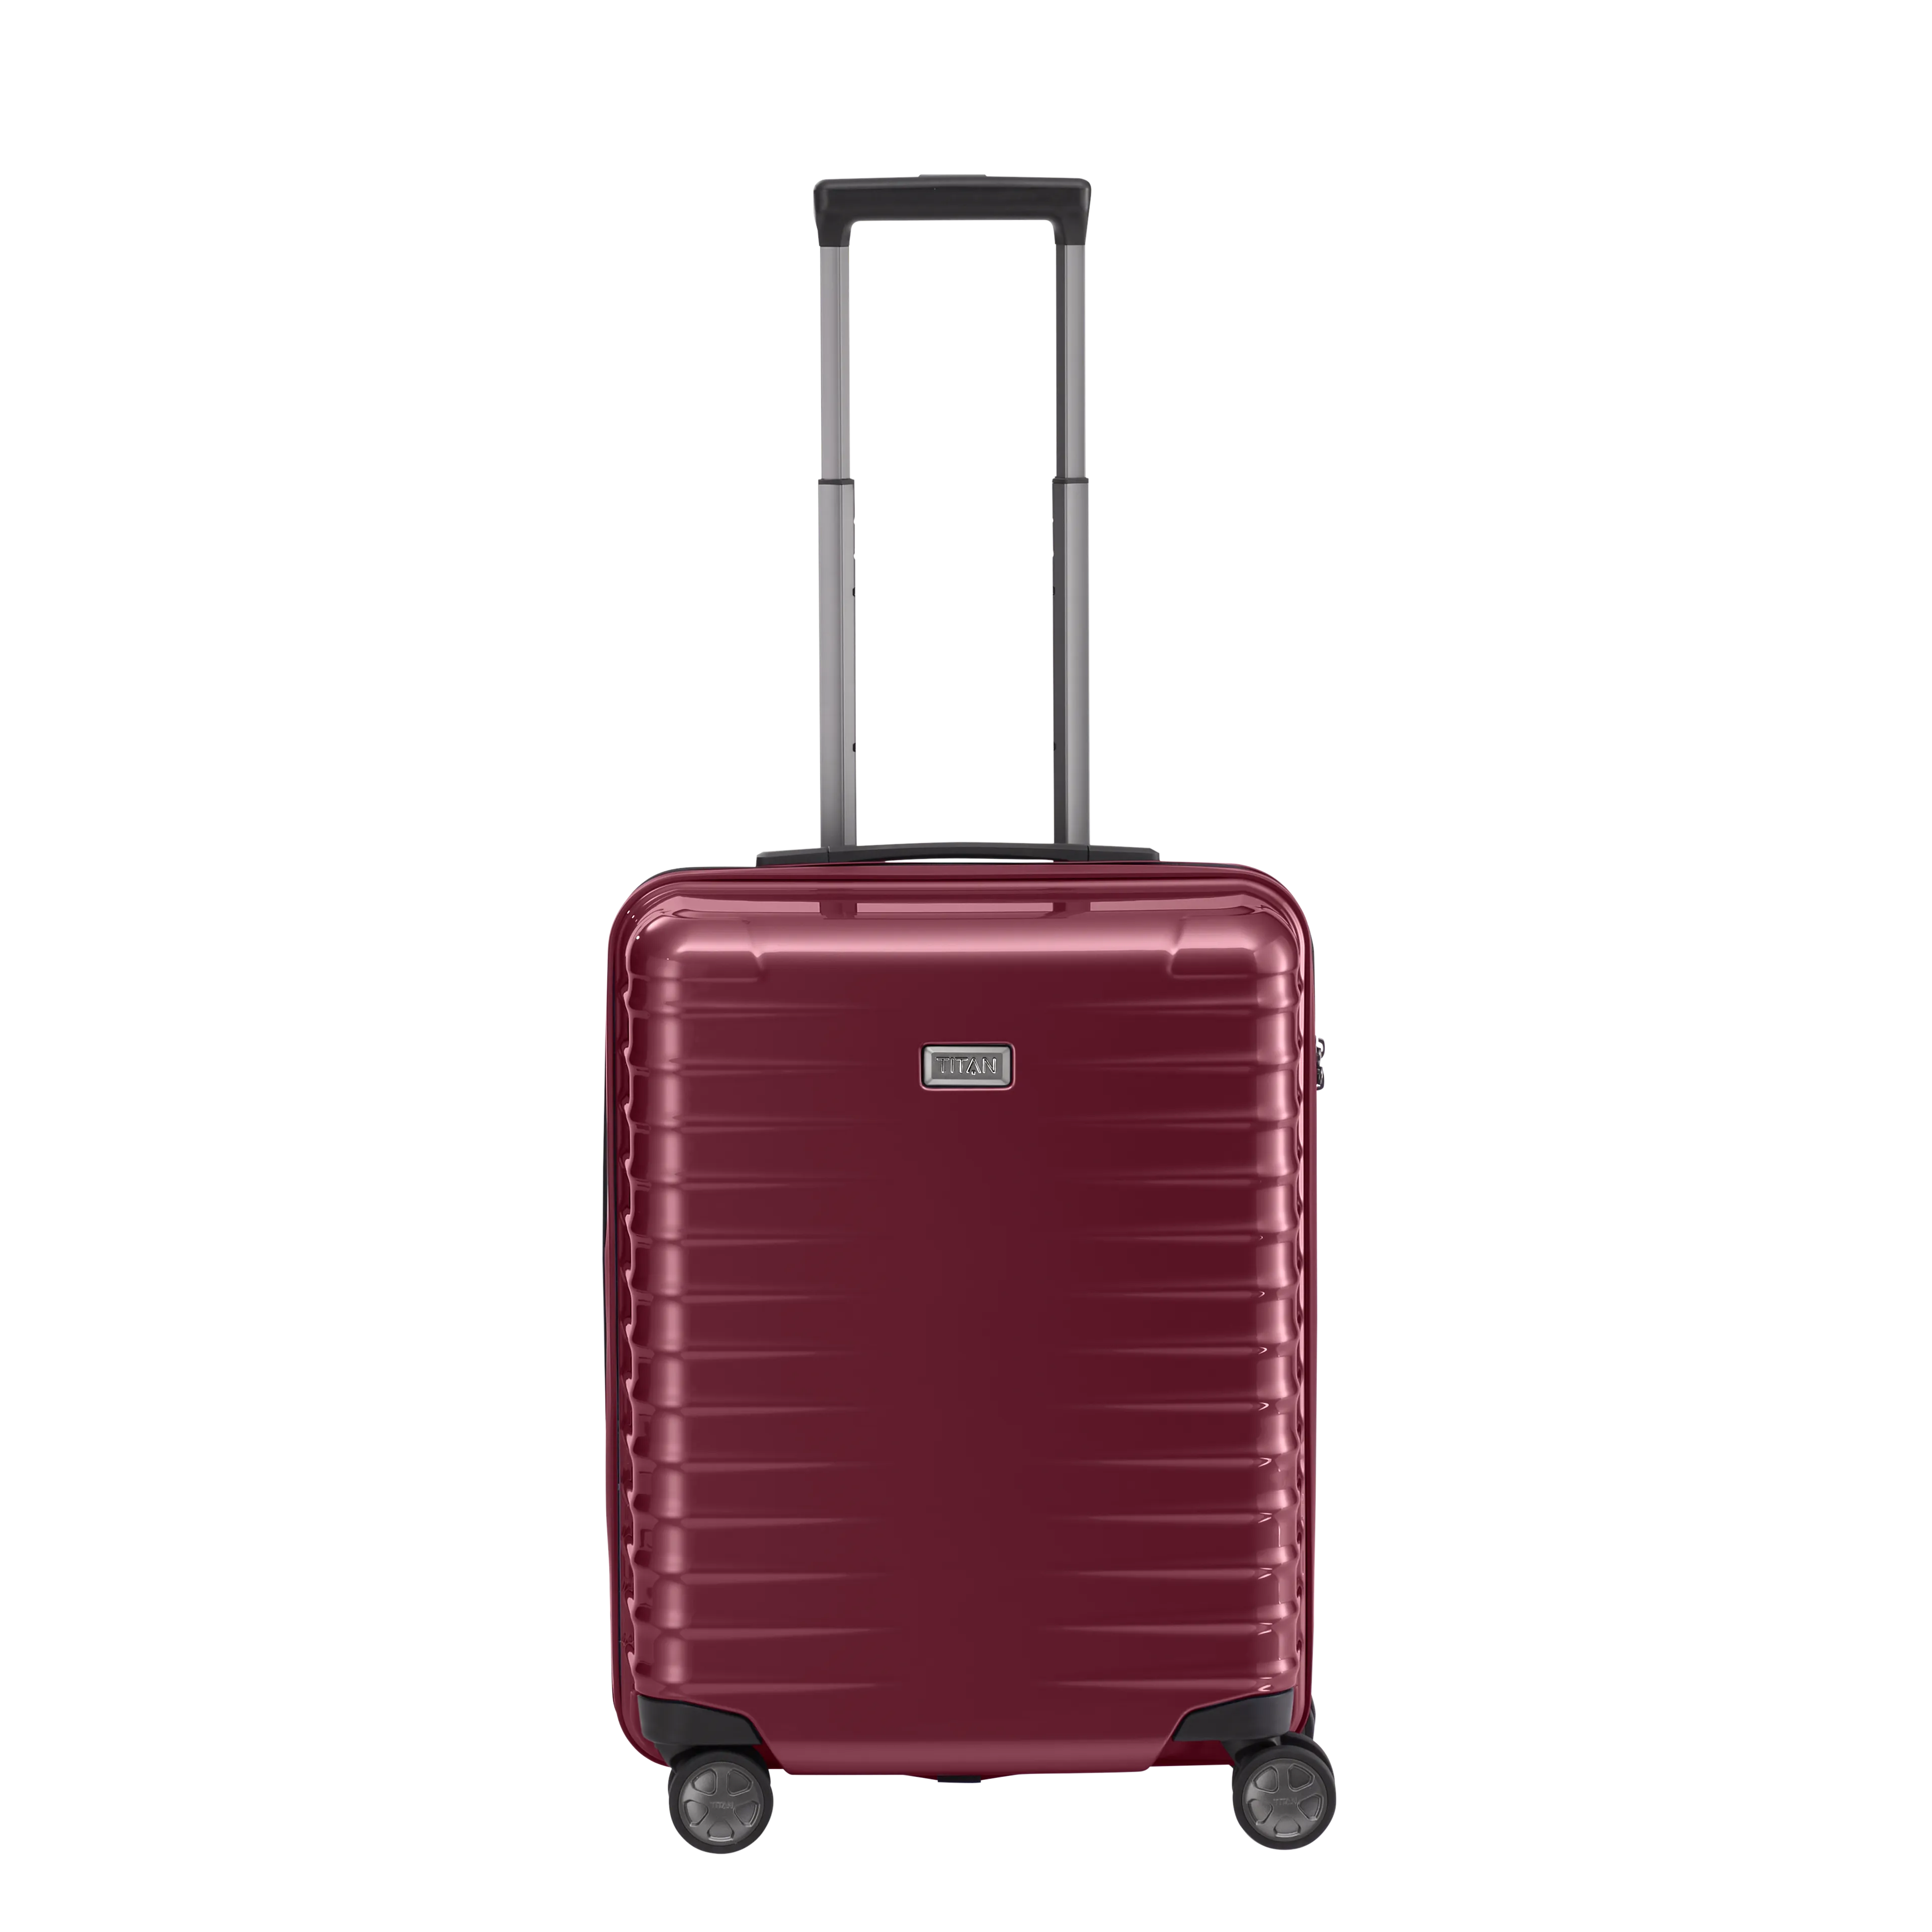 Ein TITAN Koffer der Serie LITRON Frontansicht in rot Größe S 55cm